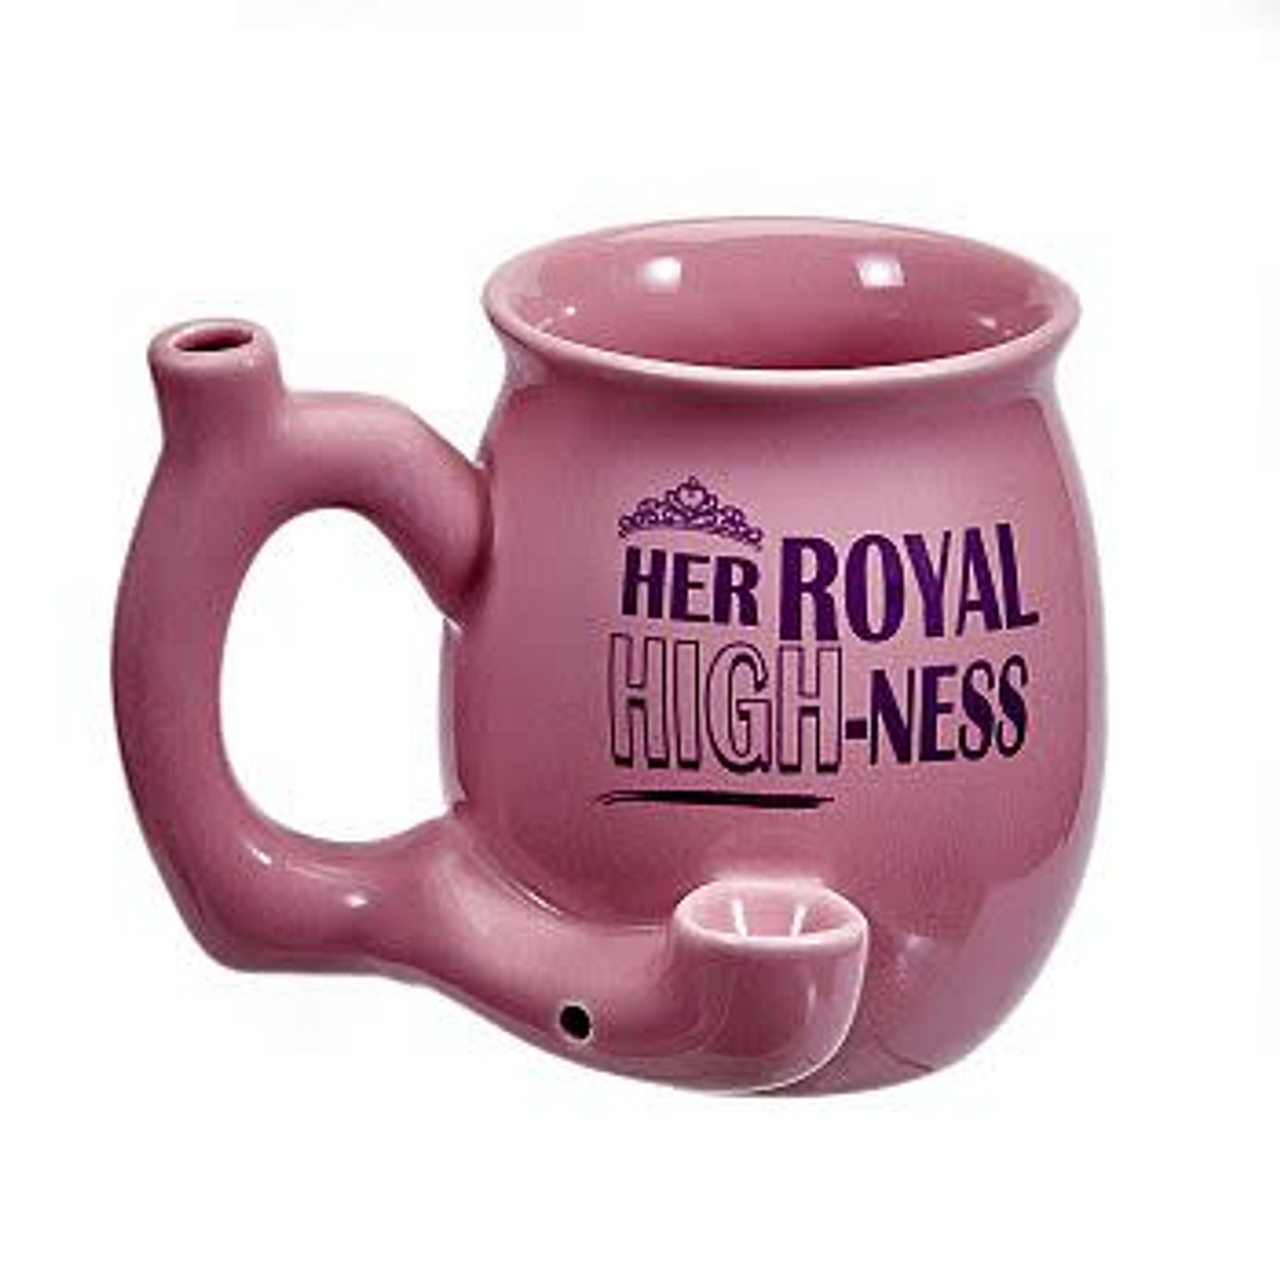 Her Royal Highness Pink Pipe Mug